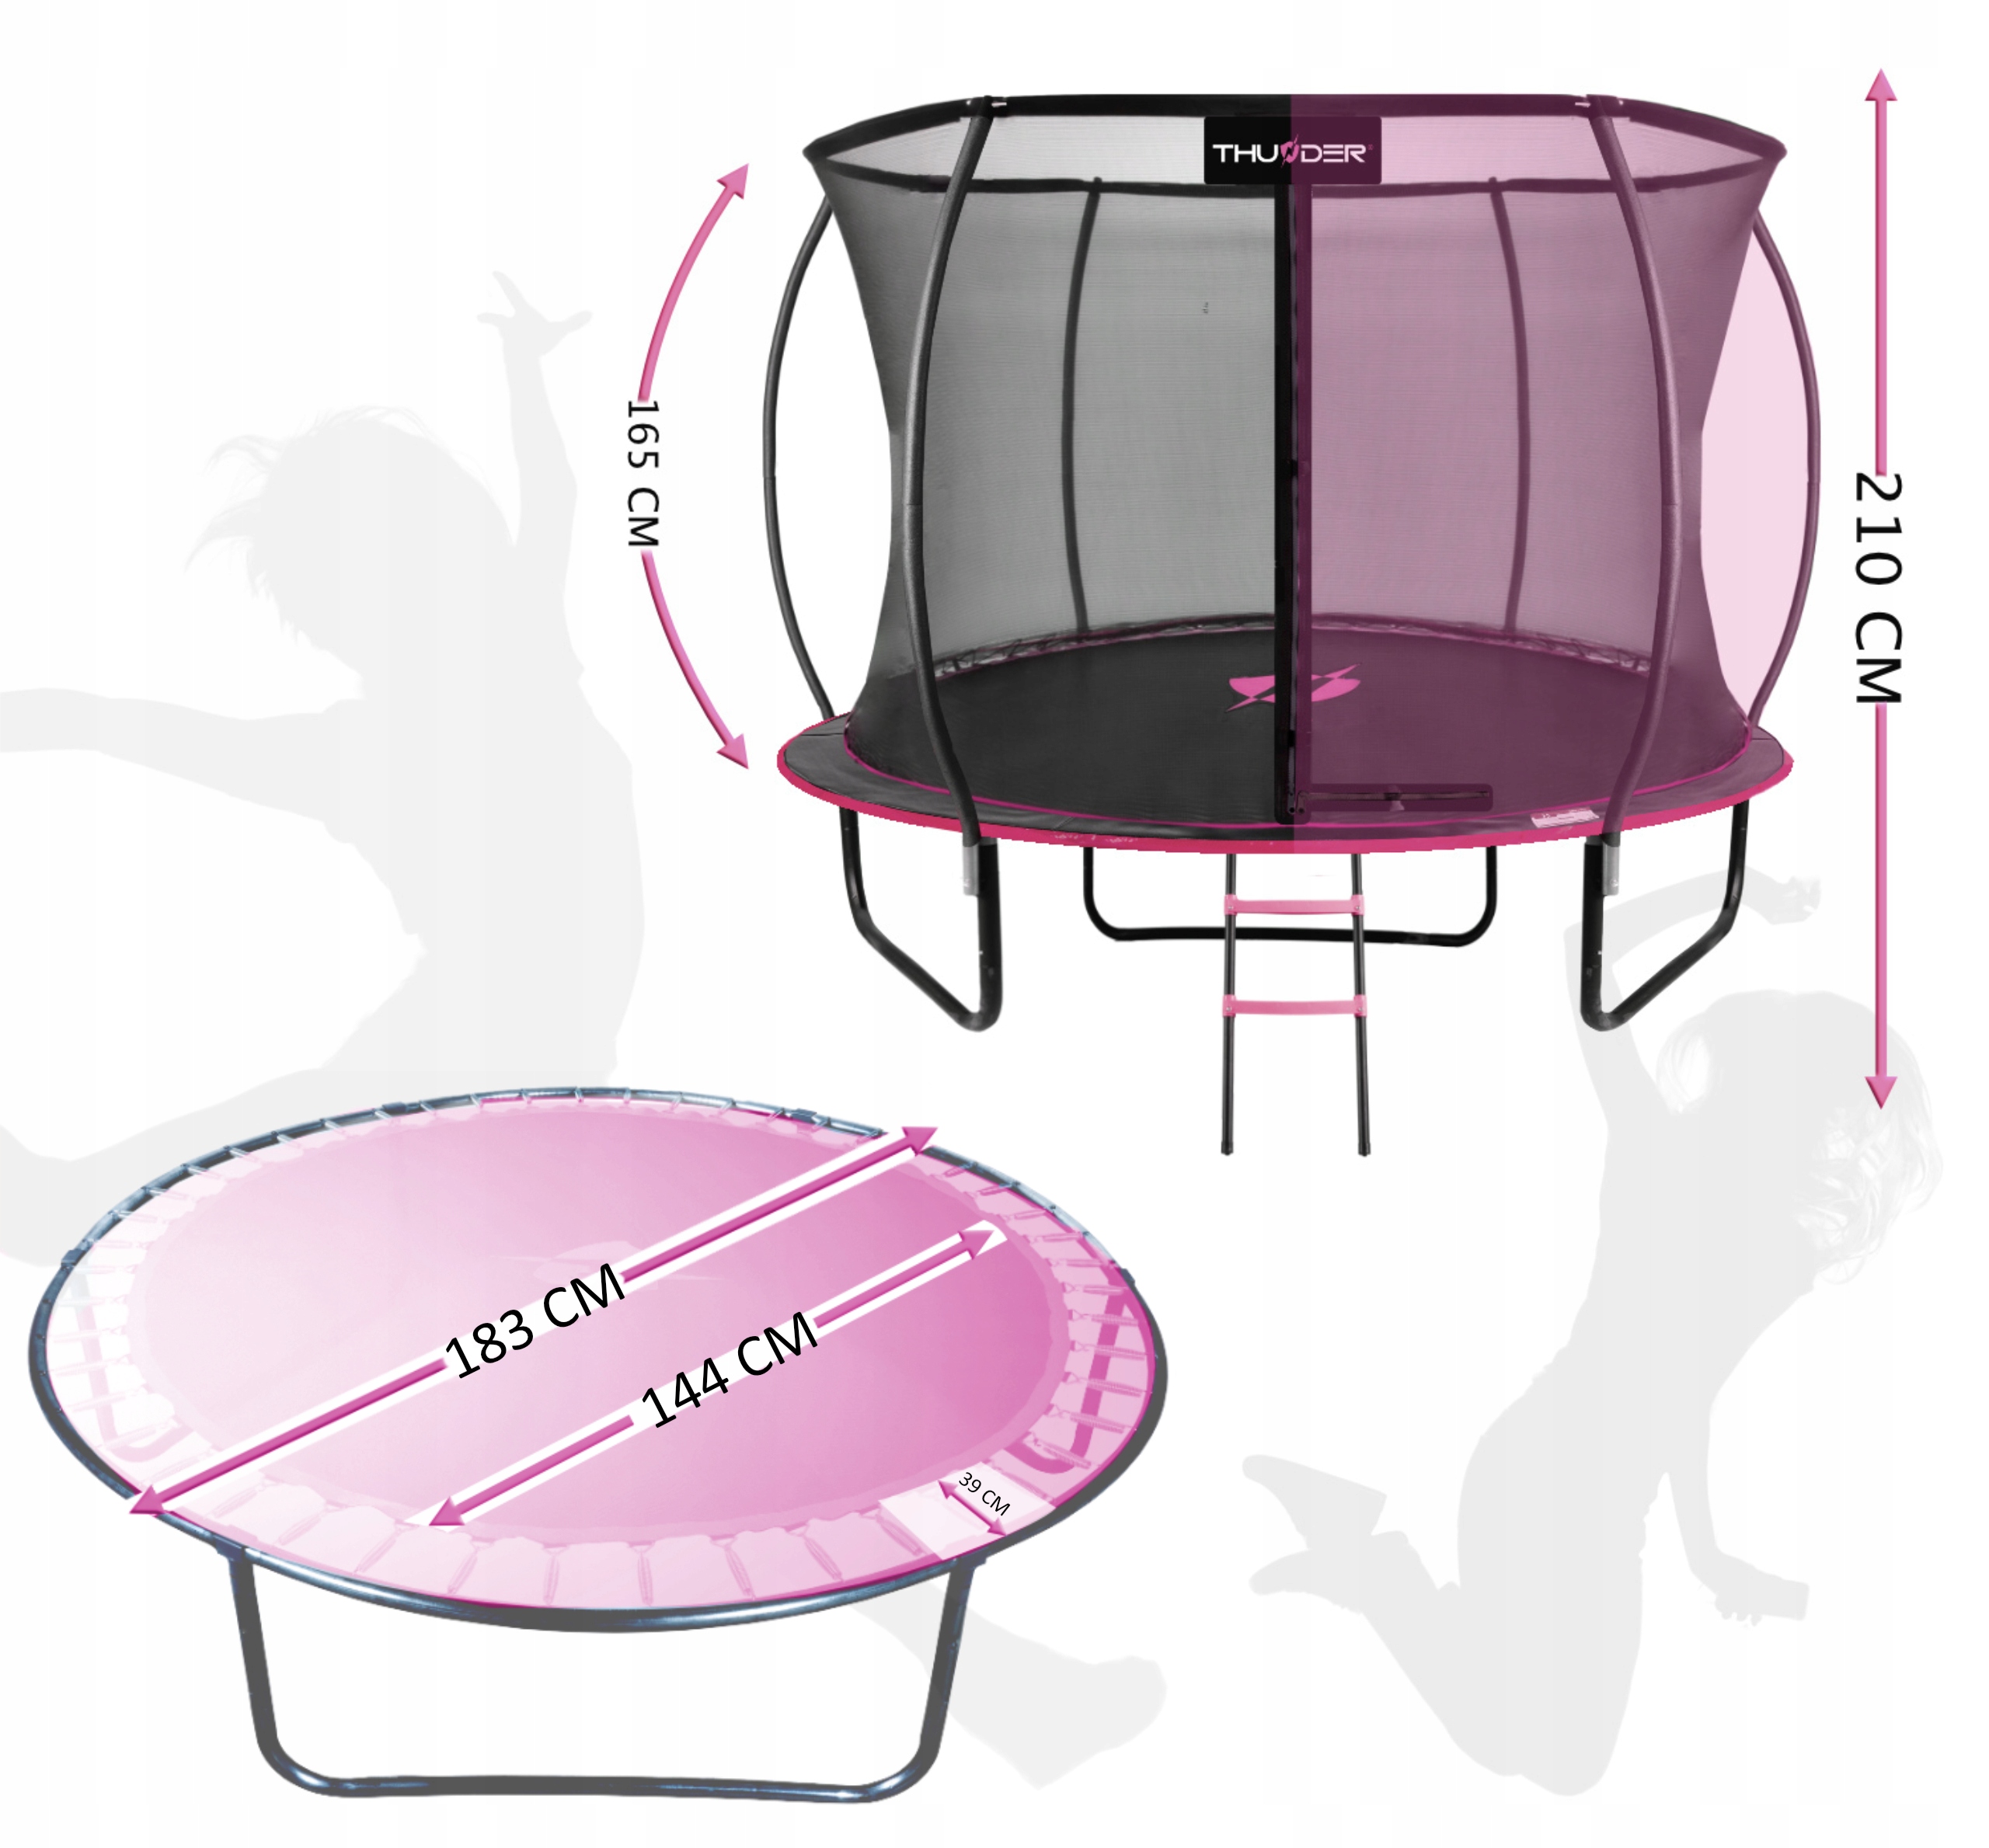 ORYGINALNA trampolina 183cm WZMOCNIONA dla dzieci z siatką NA LATA 6ft EAN (GTIN) 5904161754114